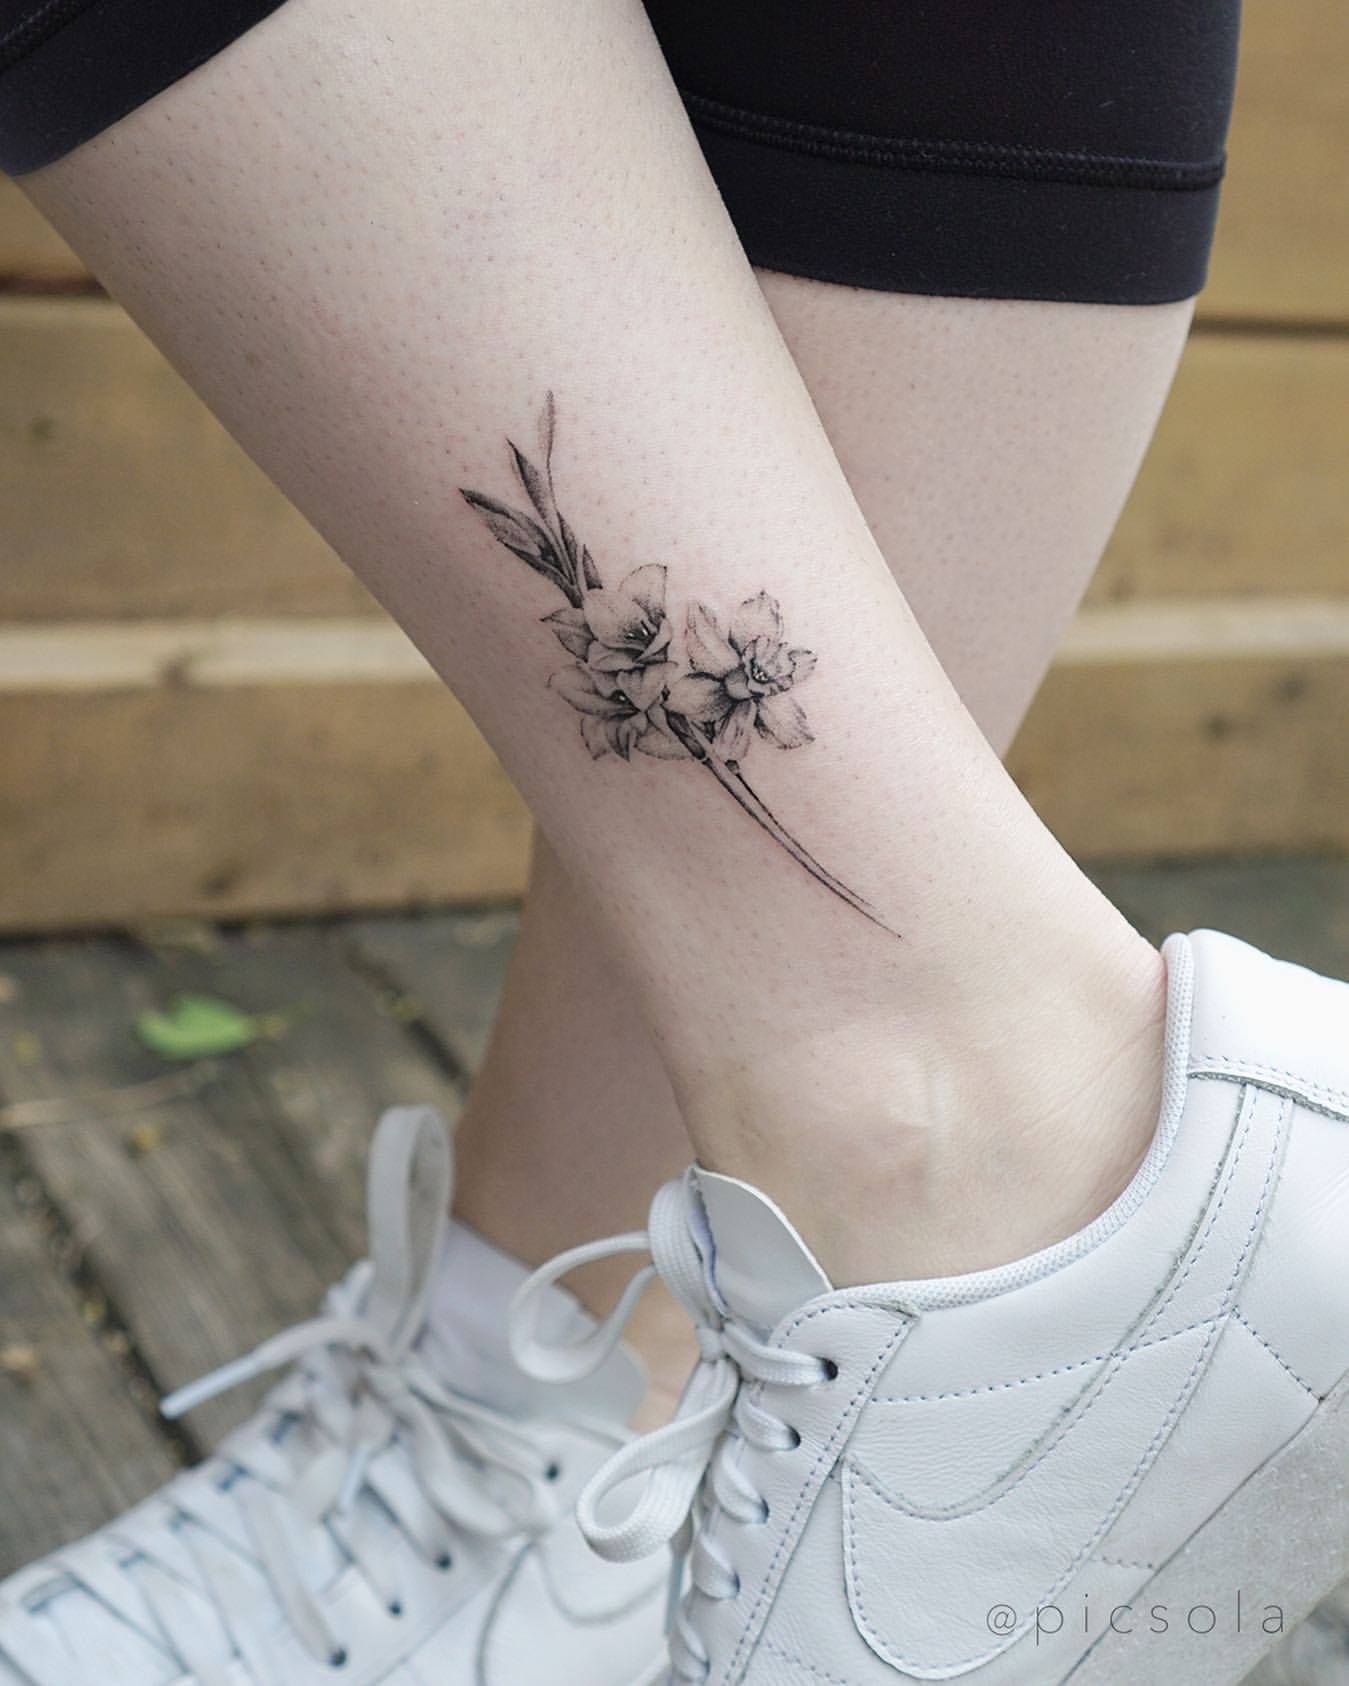 Gladiolus Tattoo Ideas 2